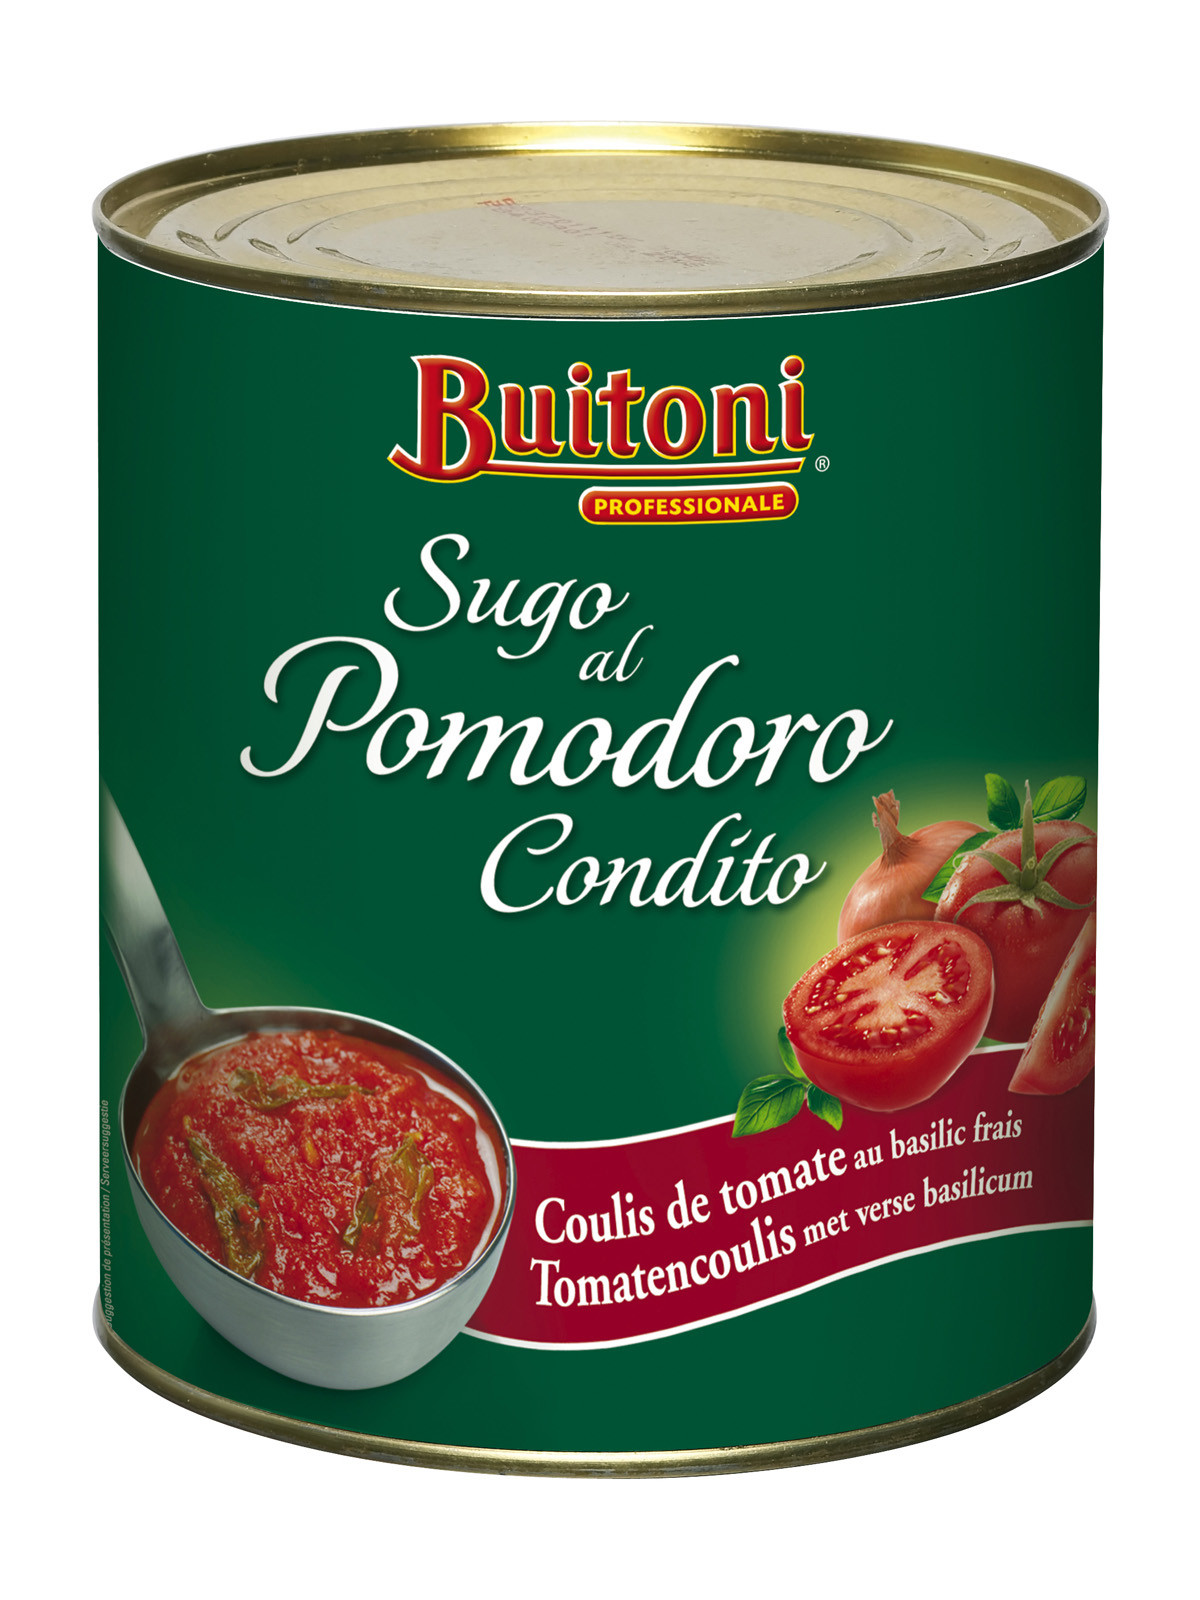 Buitoni Tomato sauce Sugo di Pomodoro condito 2.5kg can